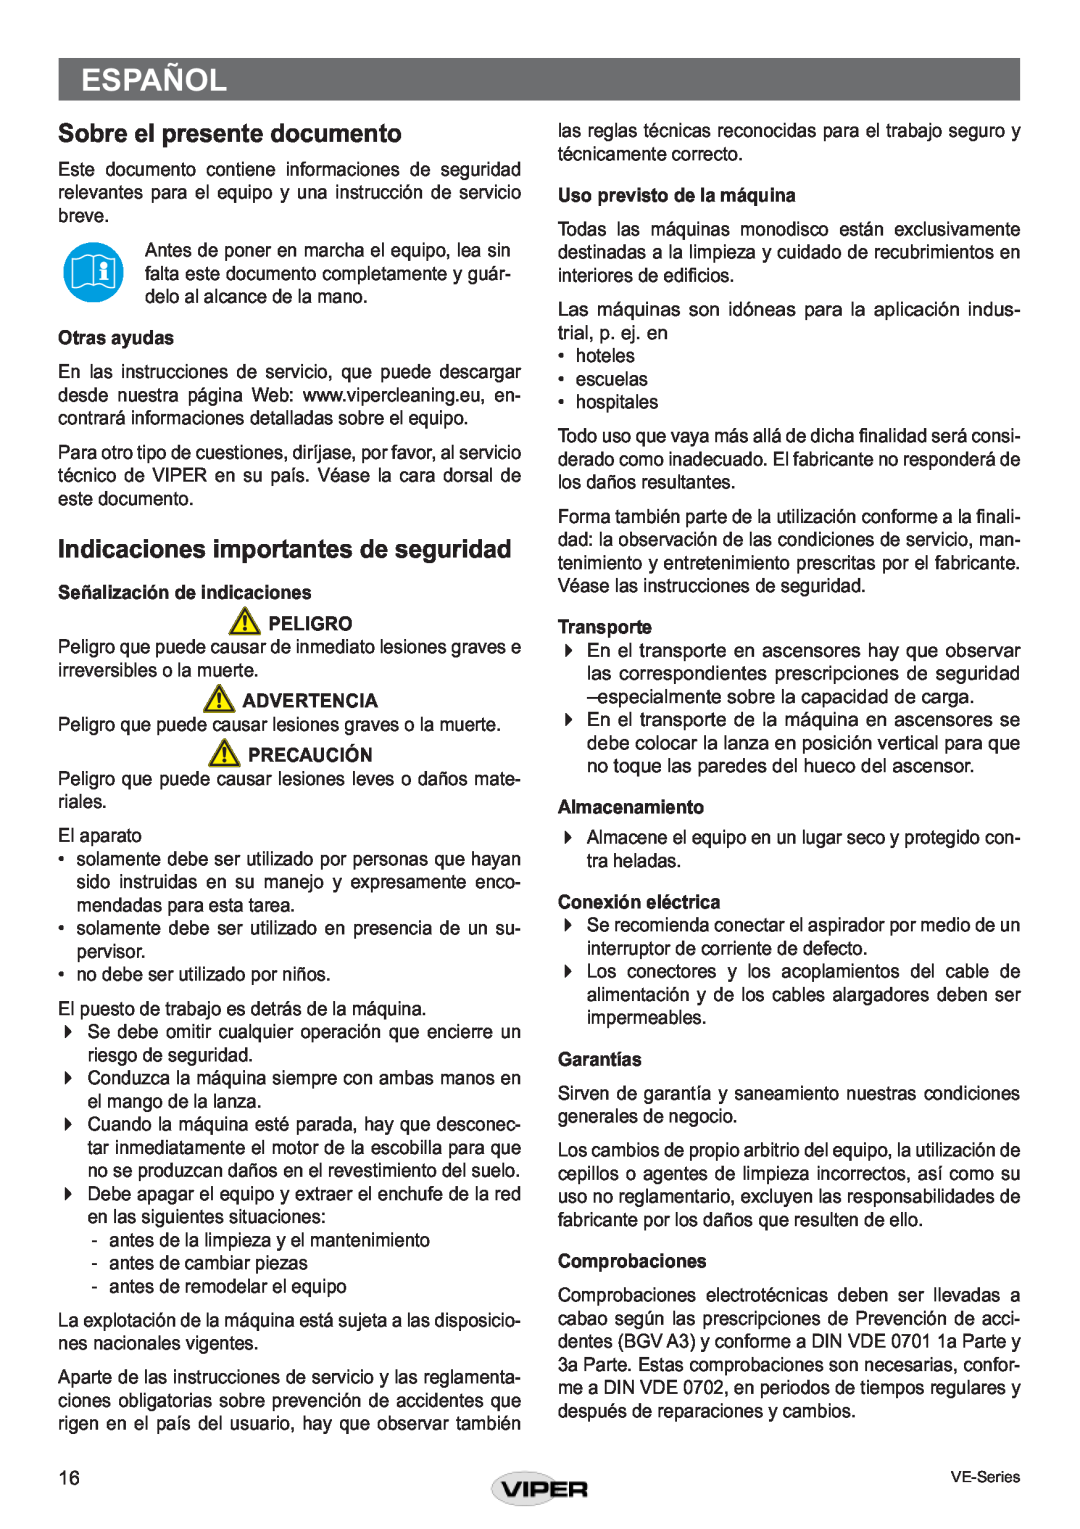 Viper VE 17 DS P Español, Sobre el presente documento, Indicaciones importantes de seguridad, Otras ayudas, Advertencia 